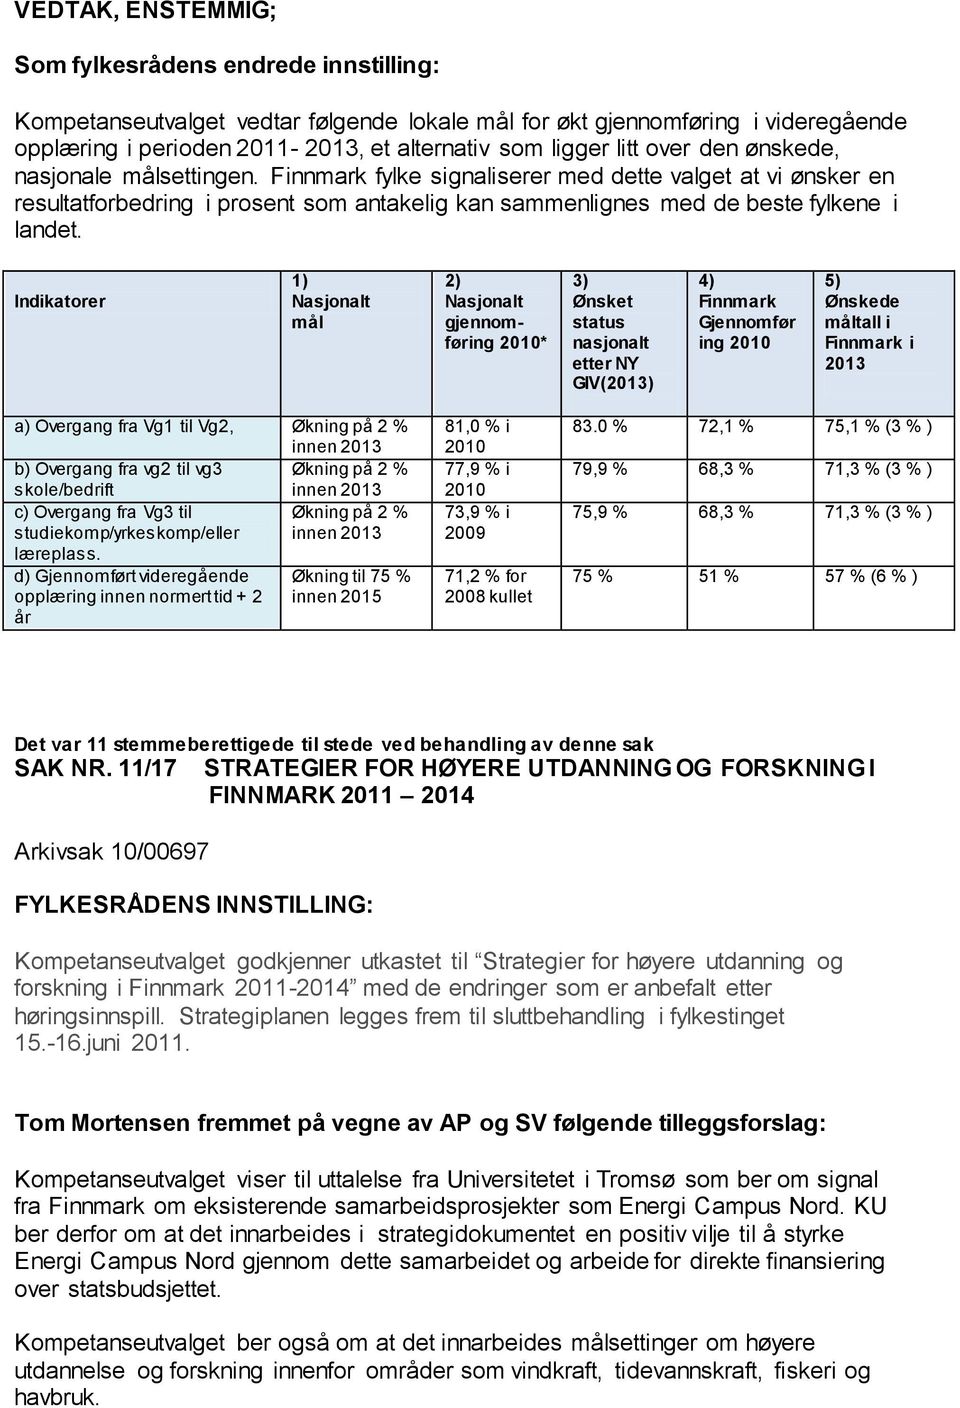 Indikatorer 1) Nasjonalt mål 2) Nasjonalt gjennomføring 2010* 3) Ønsket status nasjonalt etter NY GIV(2013) 4) Finnmark Gjennomfør ing 2010 5) Ønskede måltall i Finnmark i 2013 a) Overgang fra Vg1